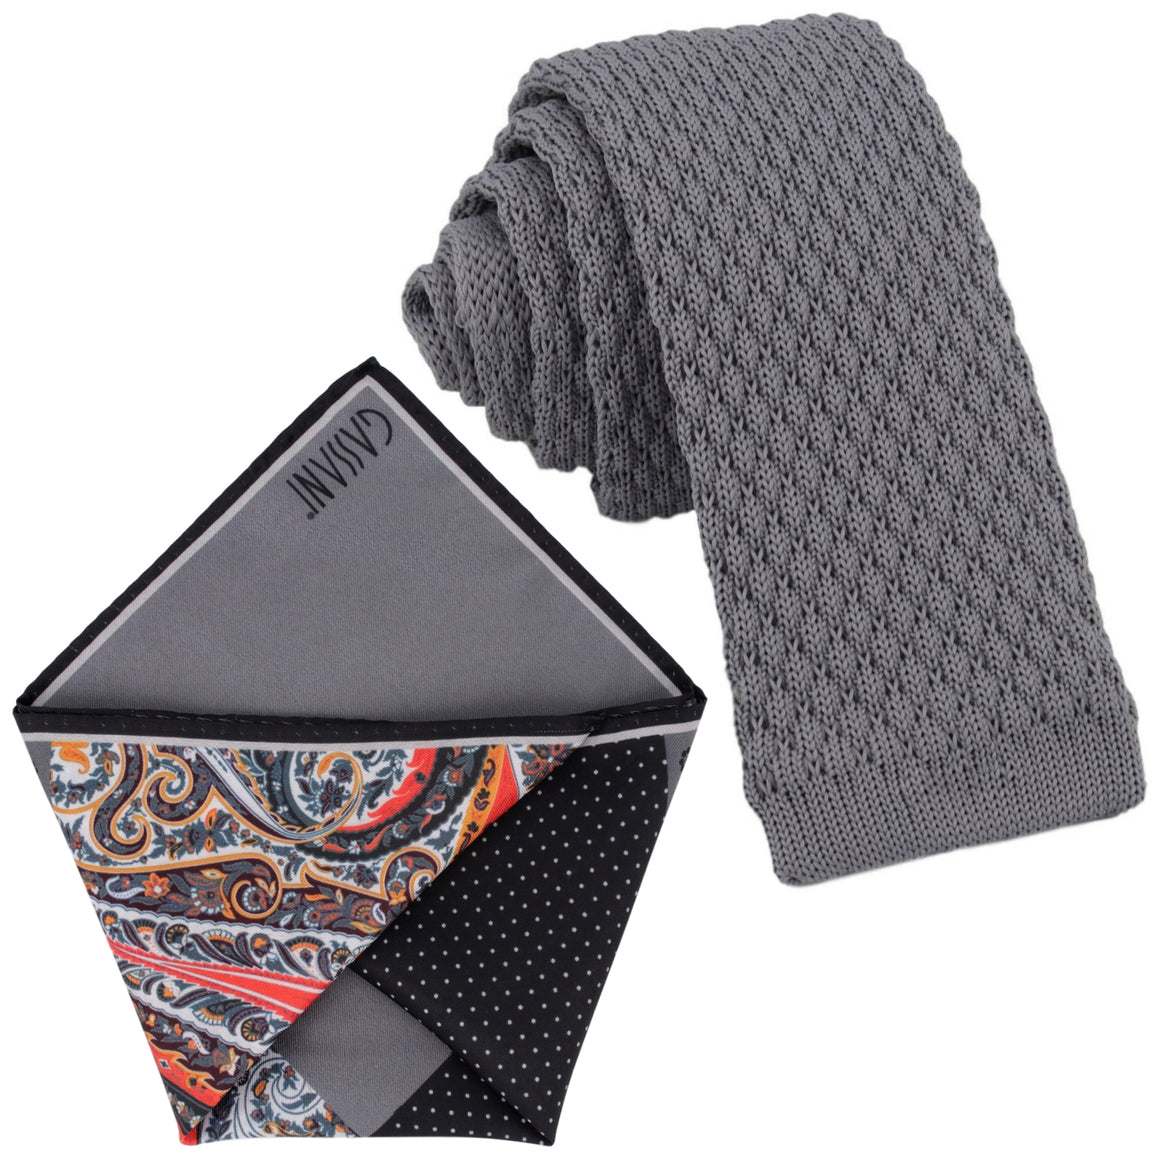 GASSANI Krawatten-Set, 6cm Schmale Gerade Dunkel-Graue Strick-Krawatte, Einstecktuch Bunt 4 Designs